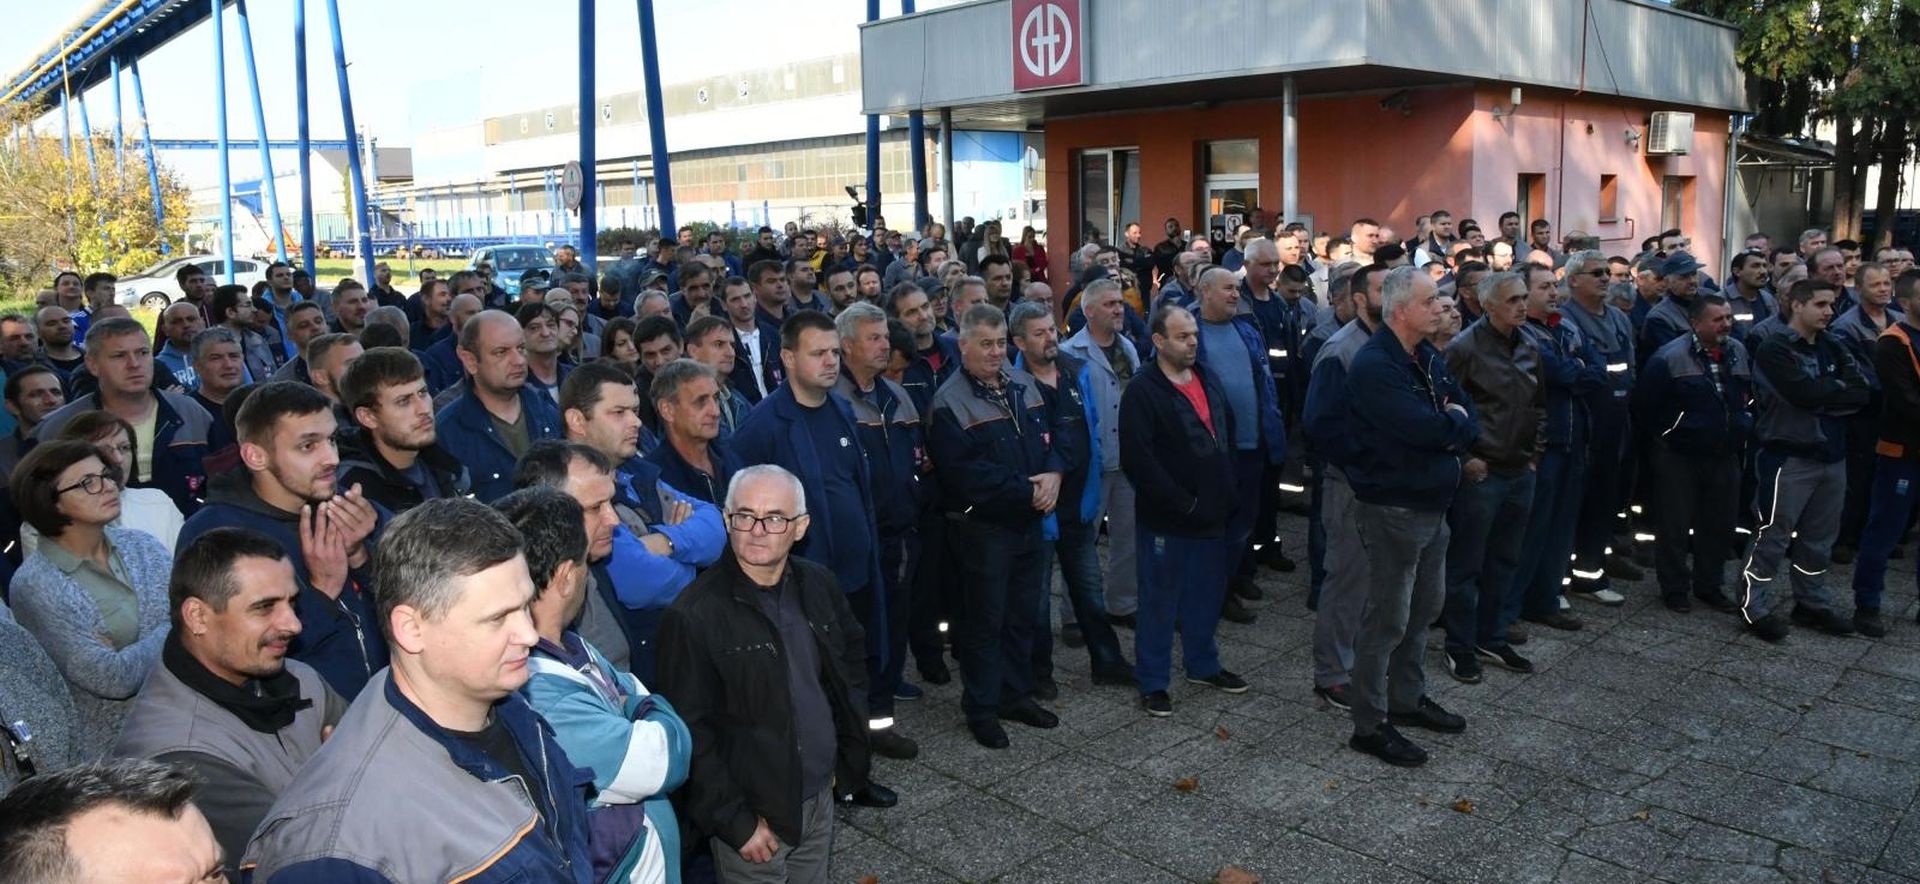 24.10.2019., Slavonski Brod, Strajk metalaca Djure Djakovica zbog neisplate placa.
Photo: Ivica Galovic/PIXSELL